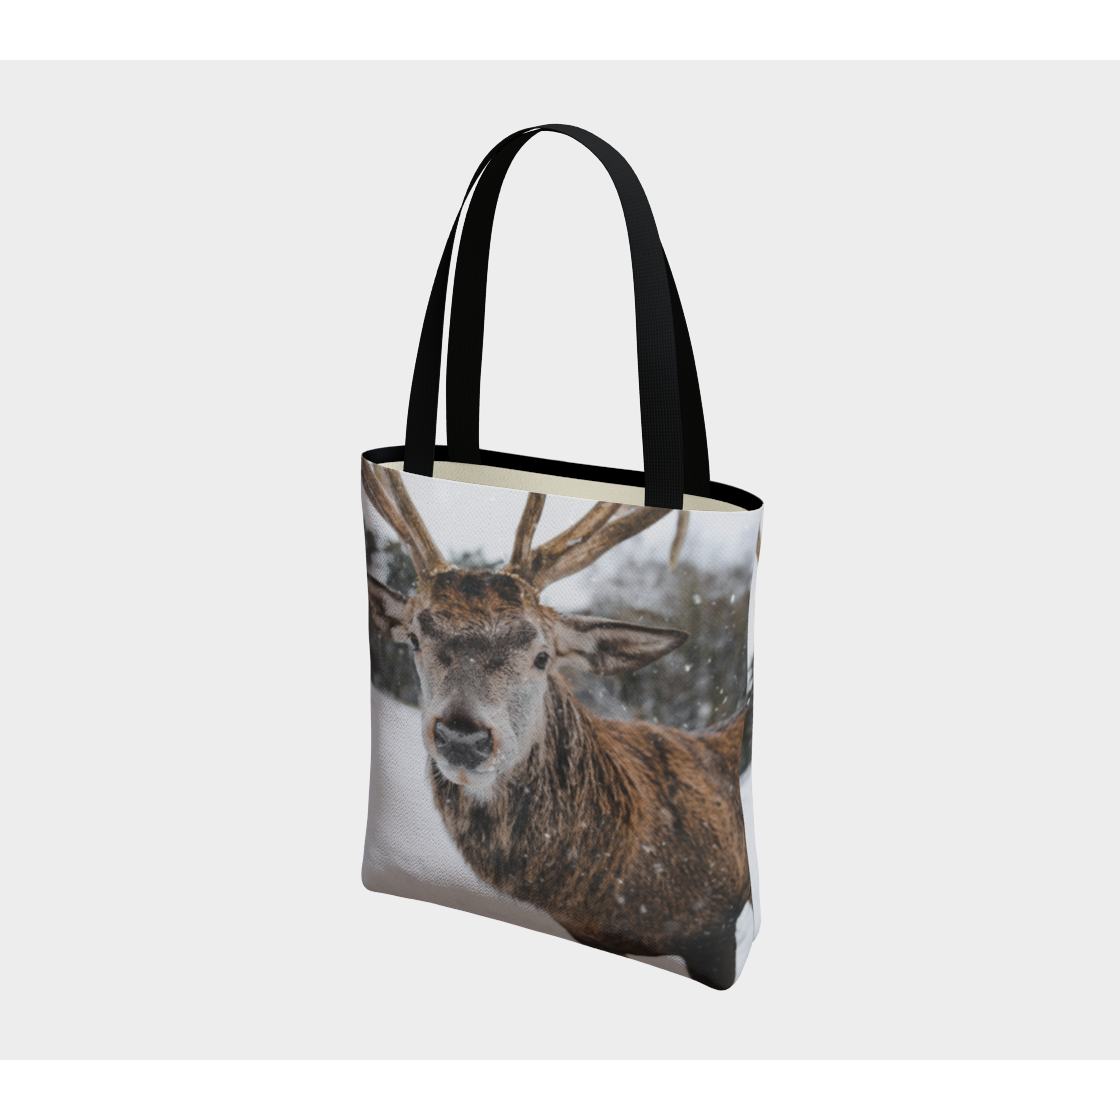 Tote Bag for Women with: I'm a Deer Design, Inside Peak